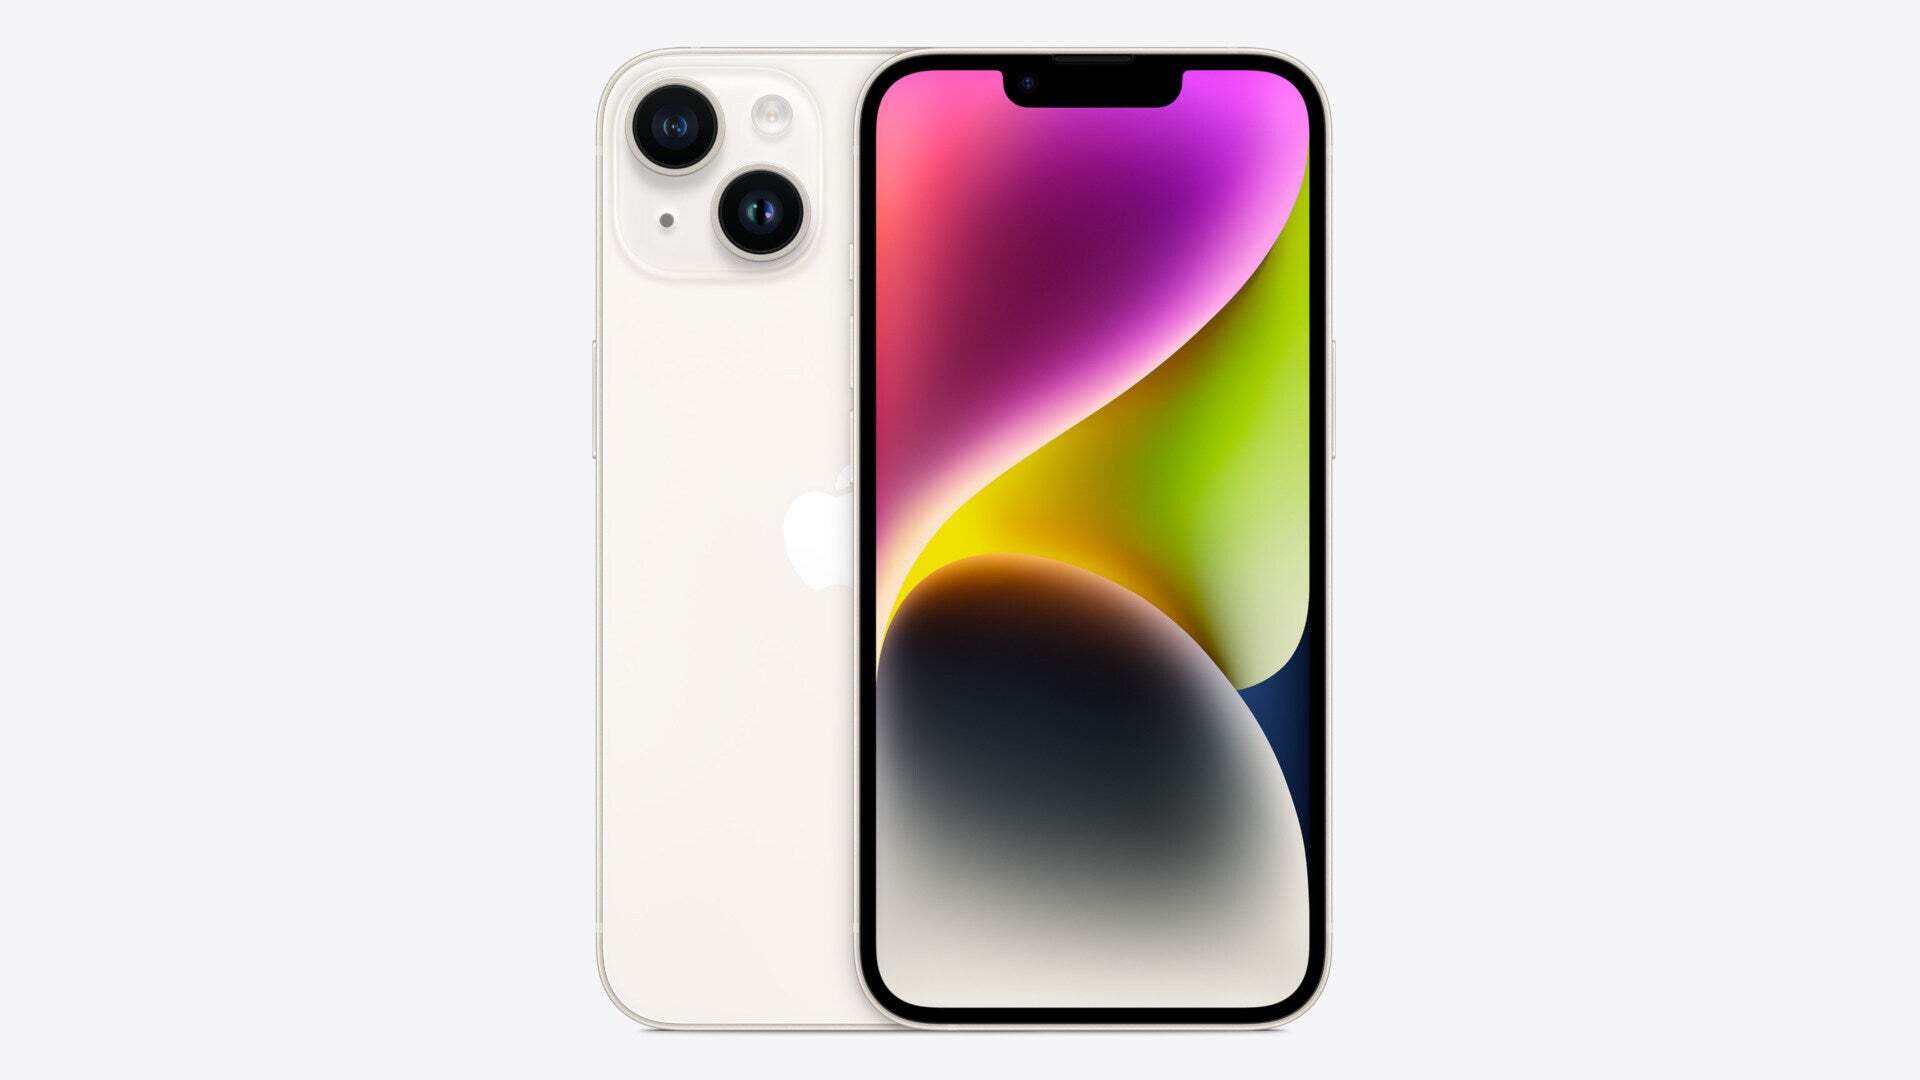 Starlight rengini sergileyen iPhone 14 (Resim Kaynağı - Apple) - iPhone 16 renkleri: söylentilerin tümü